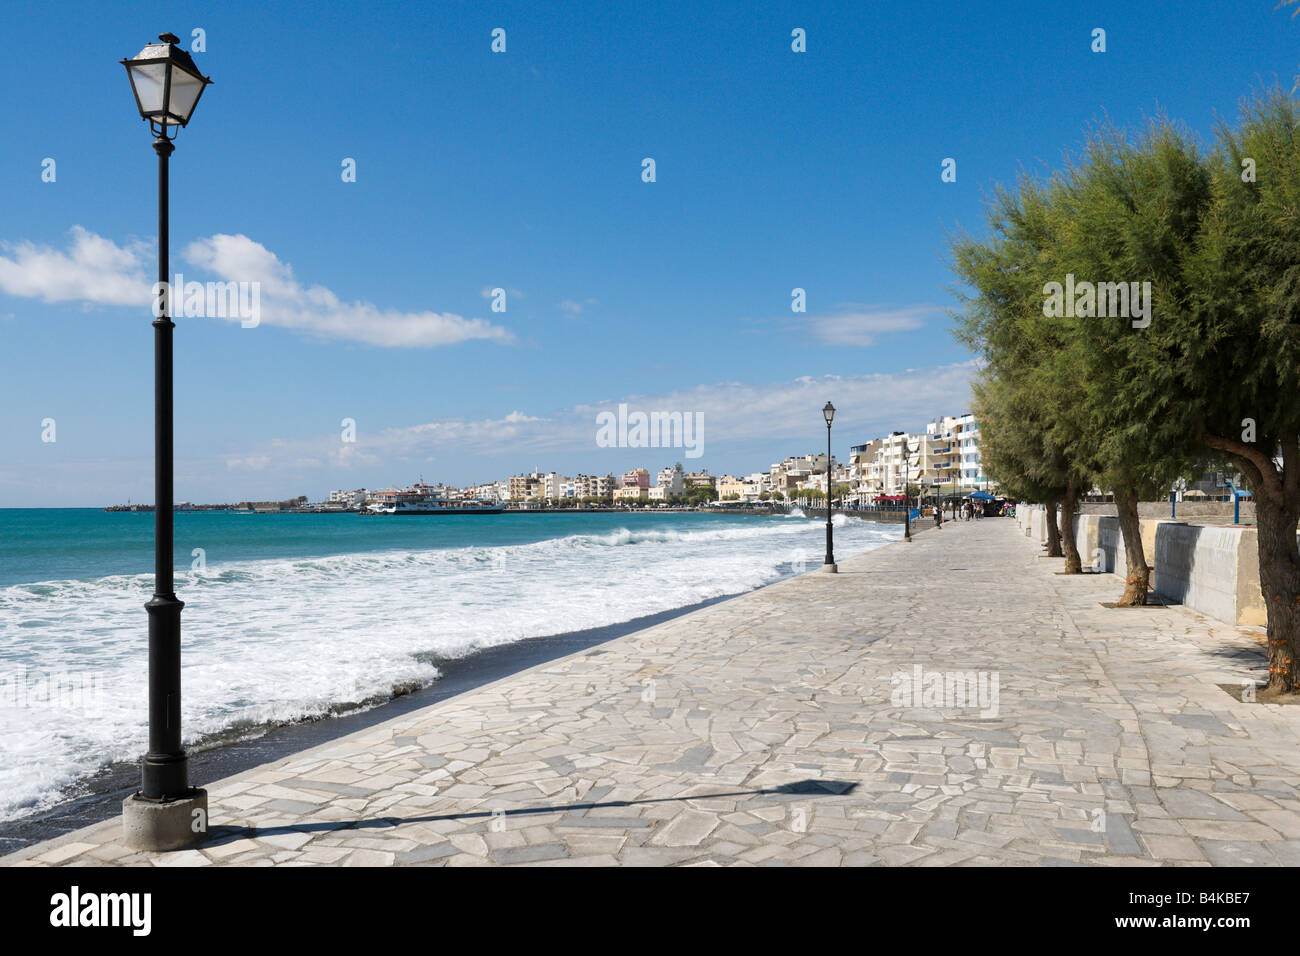 Seafront Promenade, Ierapetra, Crete, Greece Stock Photo